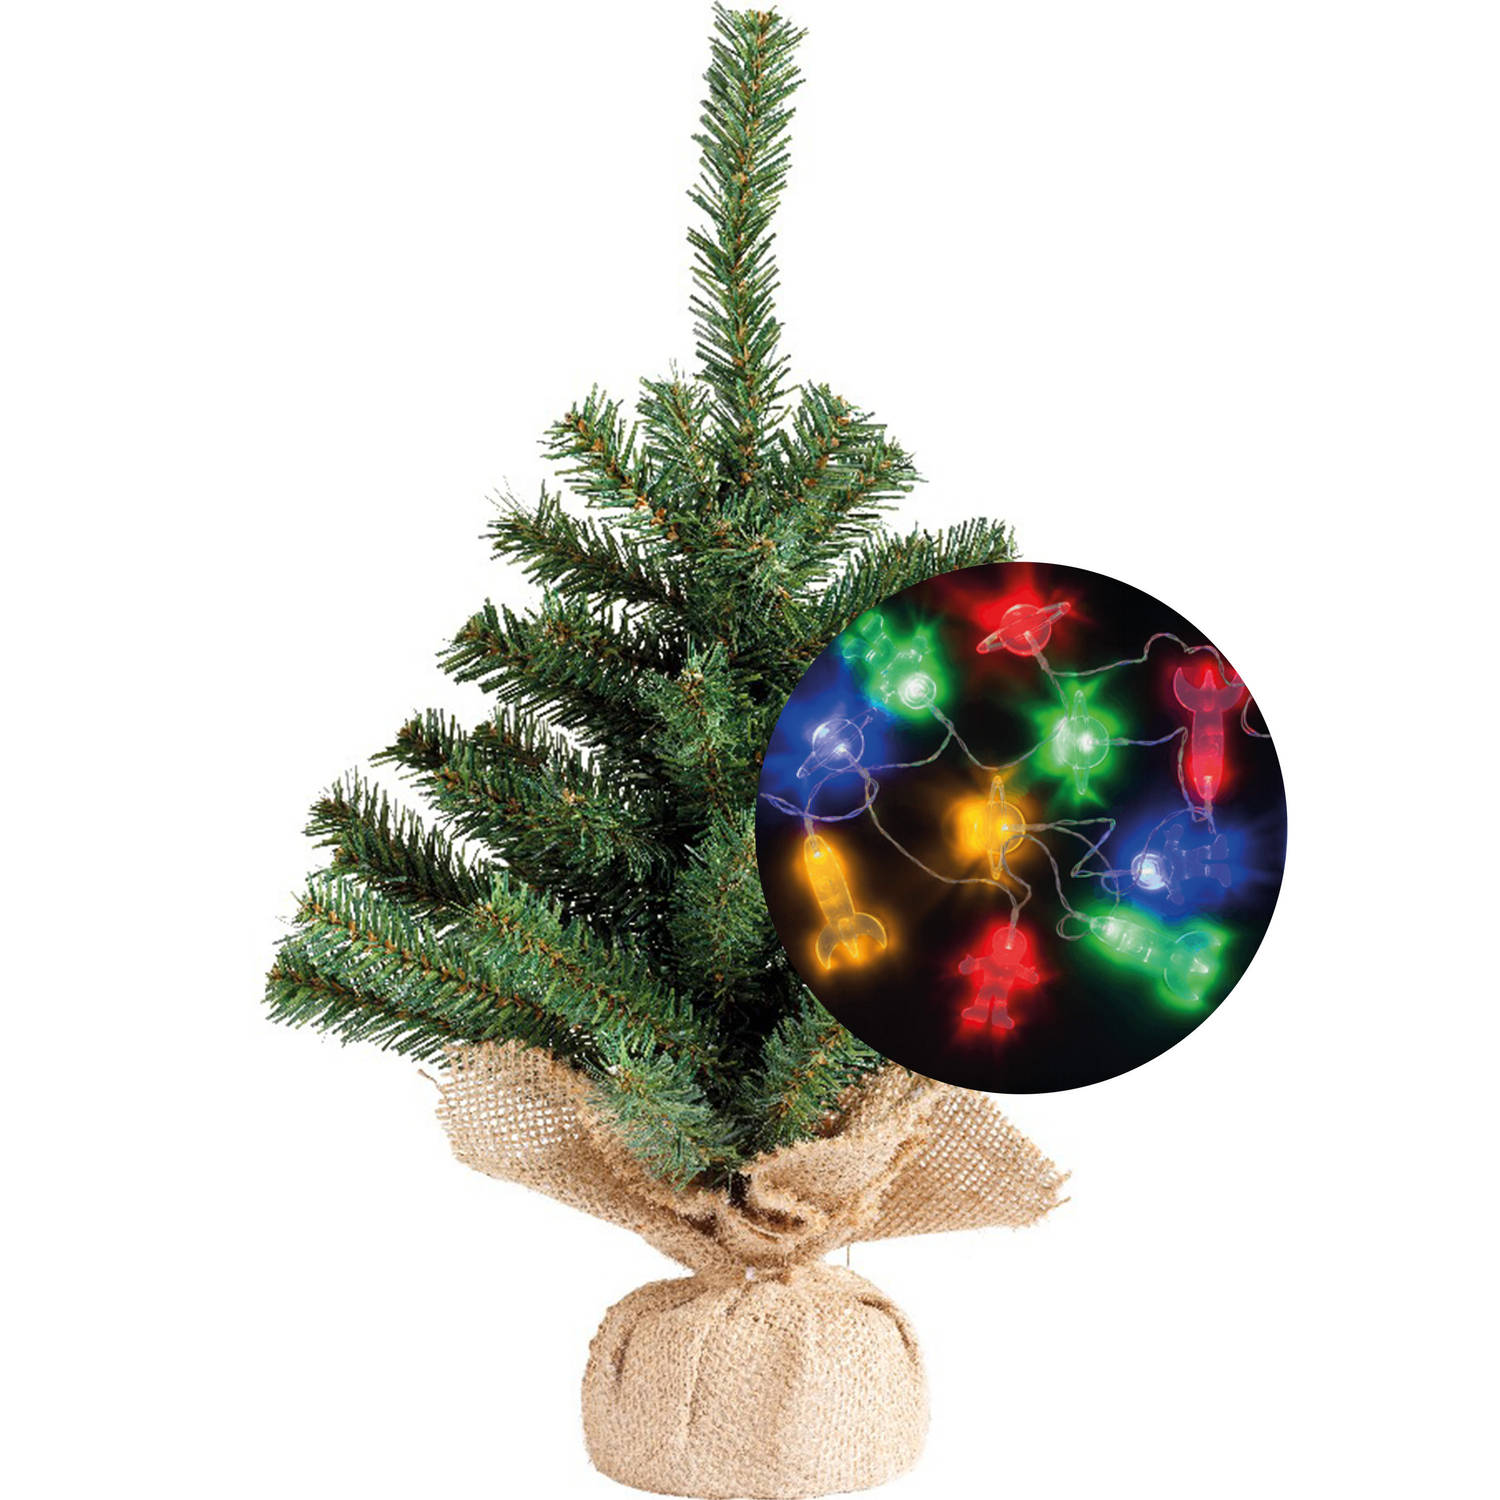 Kerstboom 45 cm incl. ruimte-space verlichting snoer 165 cm Kunstkerstboom